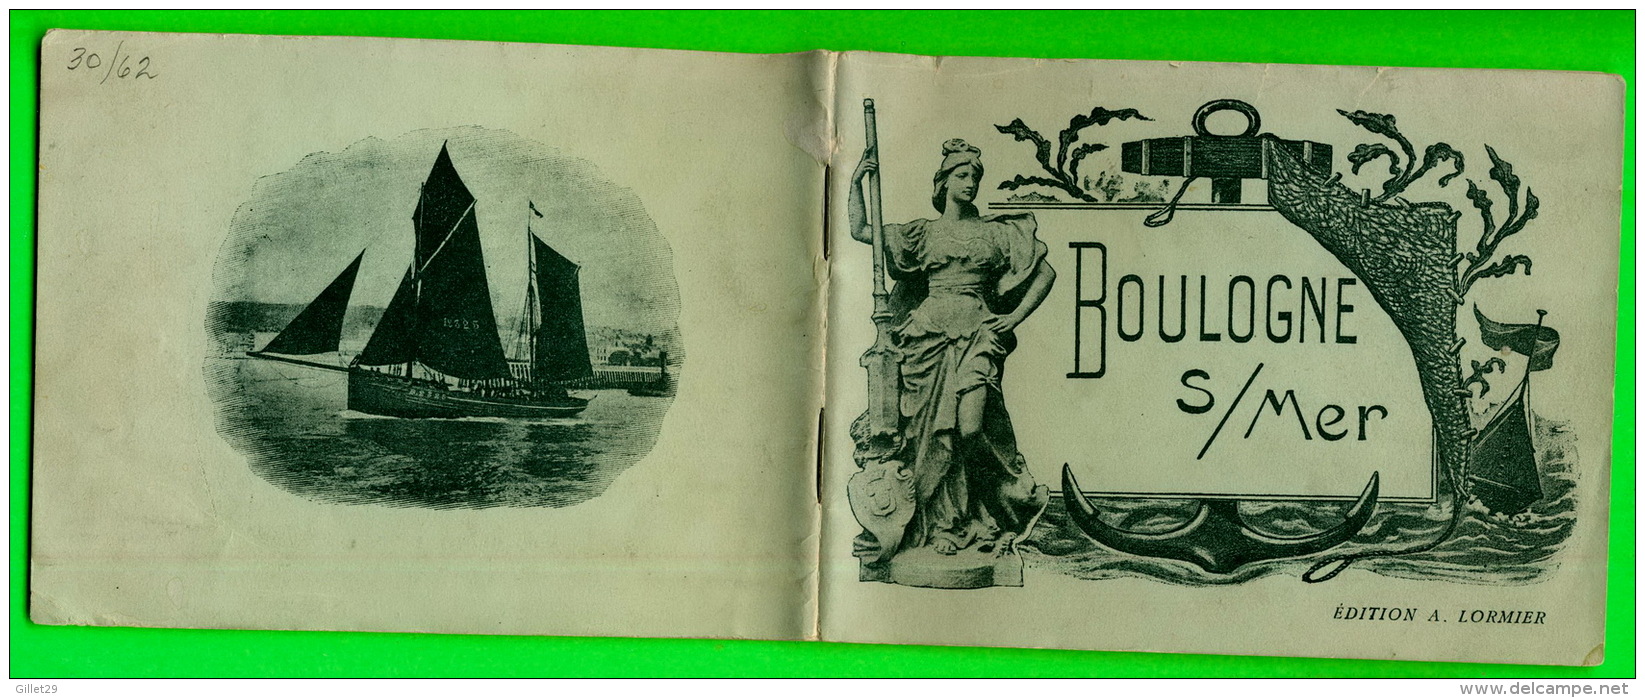 LIVRE TOURISME - BOULOGNE SUR MER (62) EN 1900  - ÉDITEUR, A. LORMIER -  52 PAGES - - Tourisme